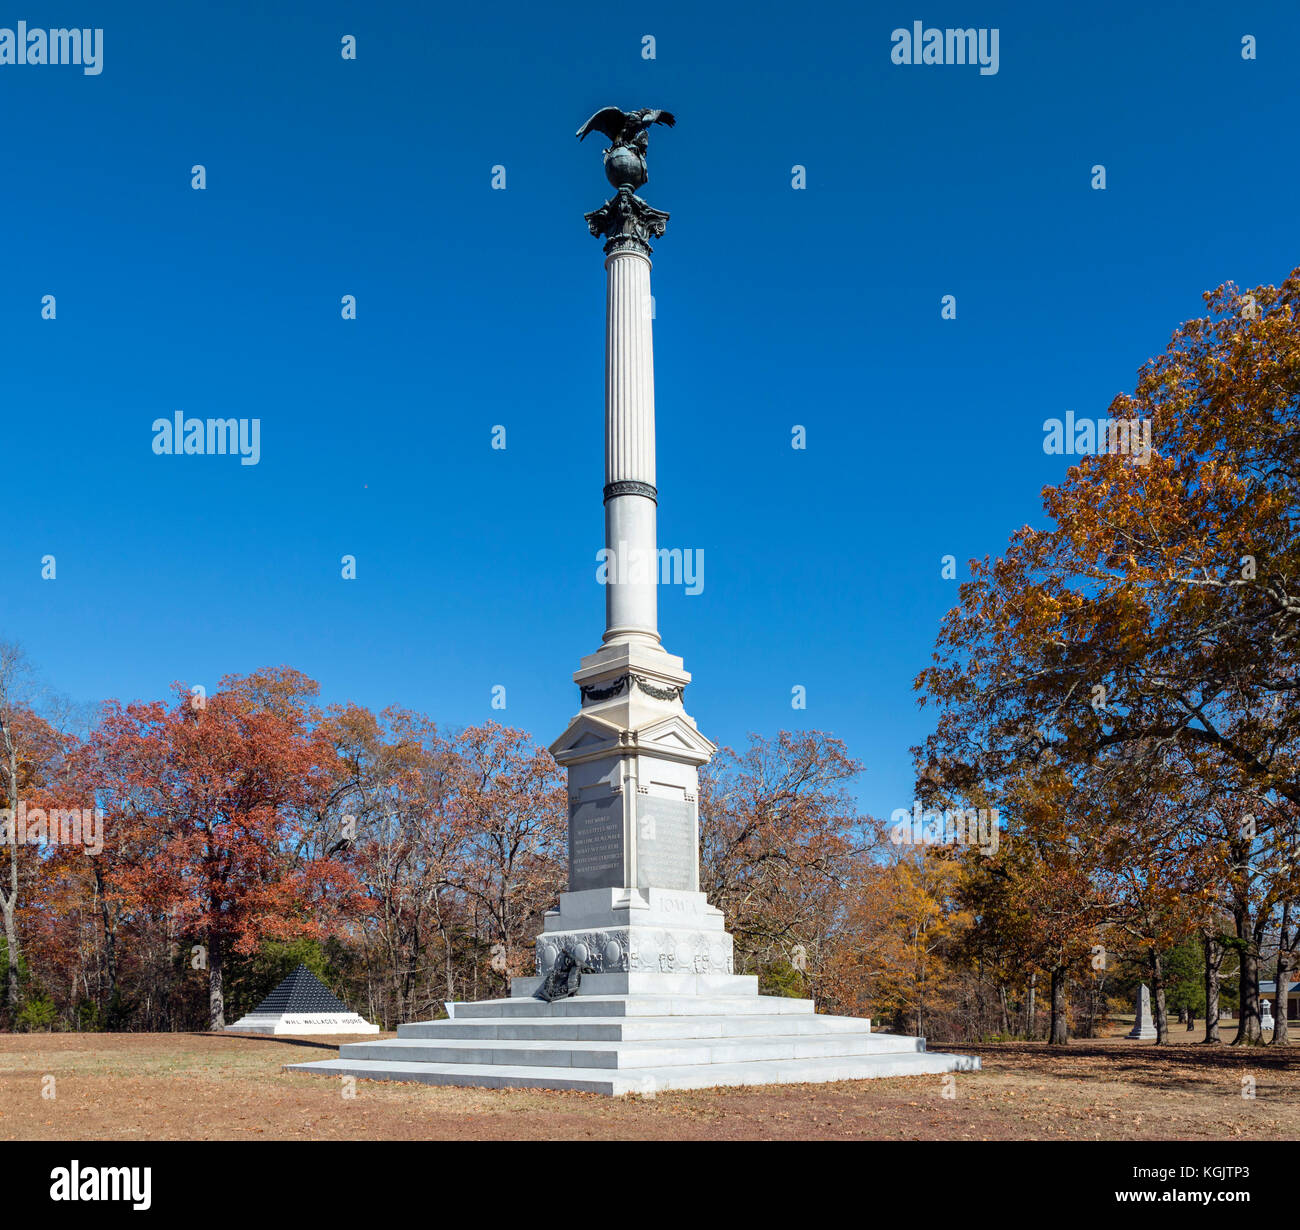 Monument de l'Iowa, Shiloh National Military Park, California, USA Banque D'Images